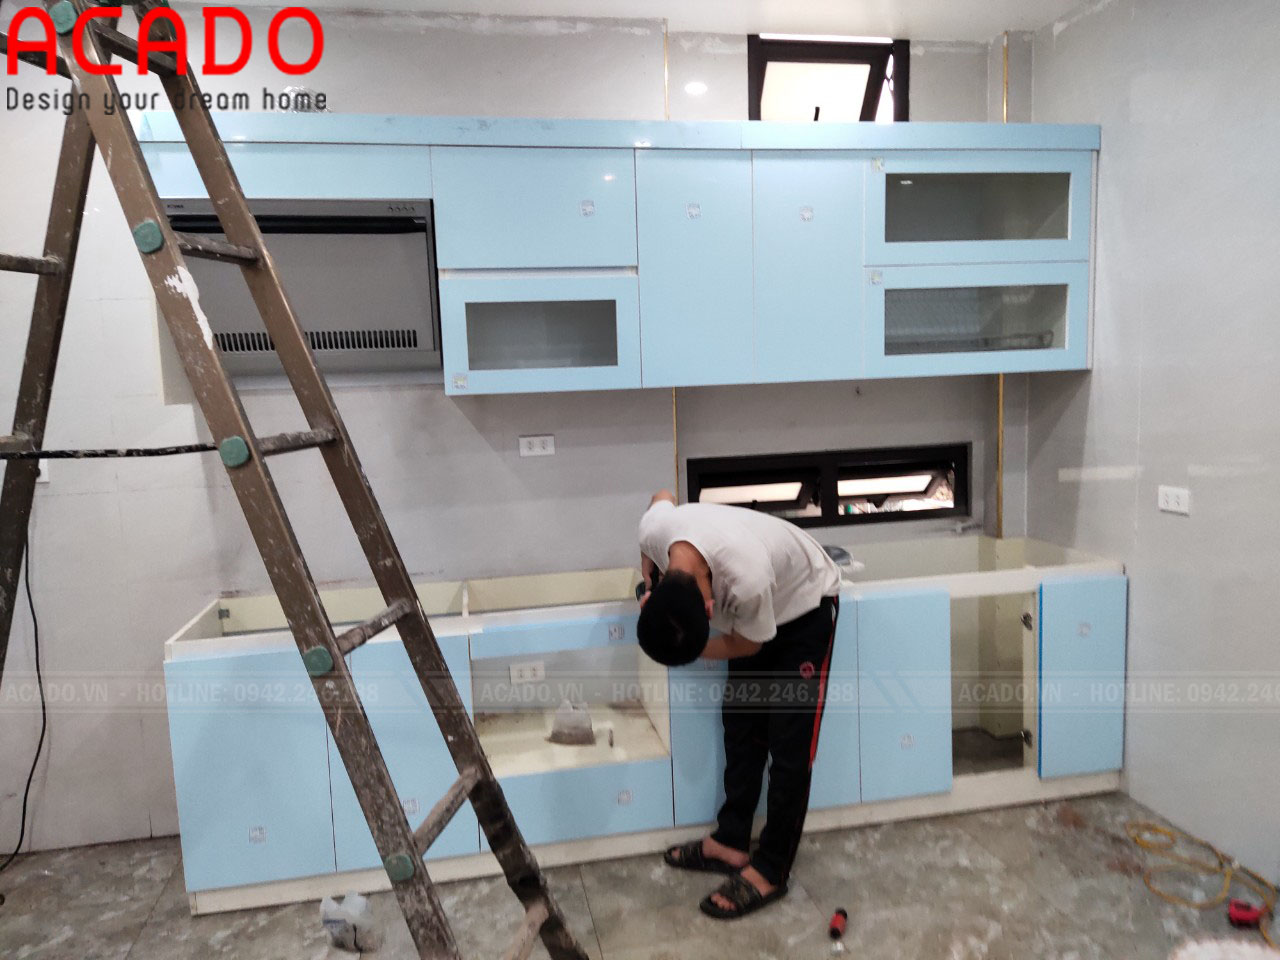 Thợ thi công nhanh chóng hoàn thành công trình lắp đặt tủ bếp cho gia đình anh Hoàn